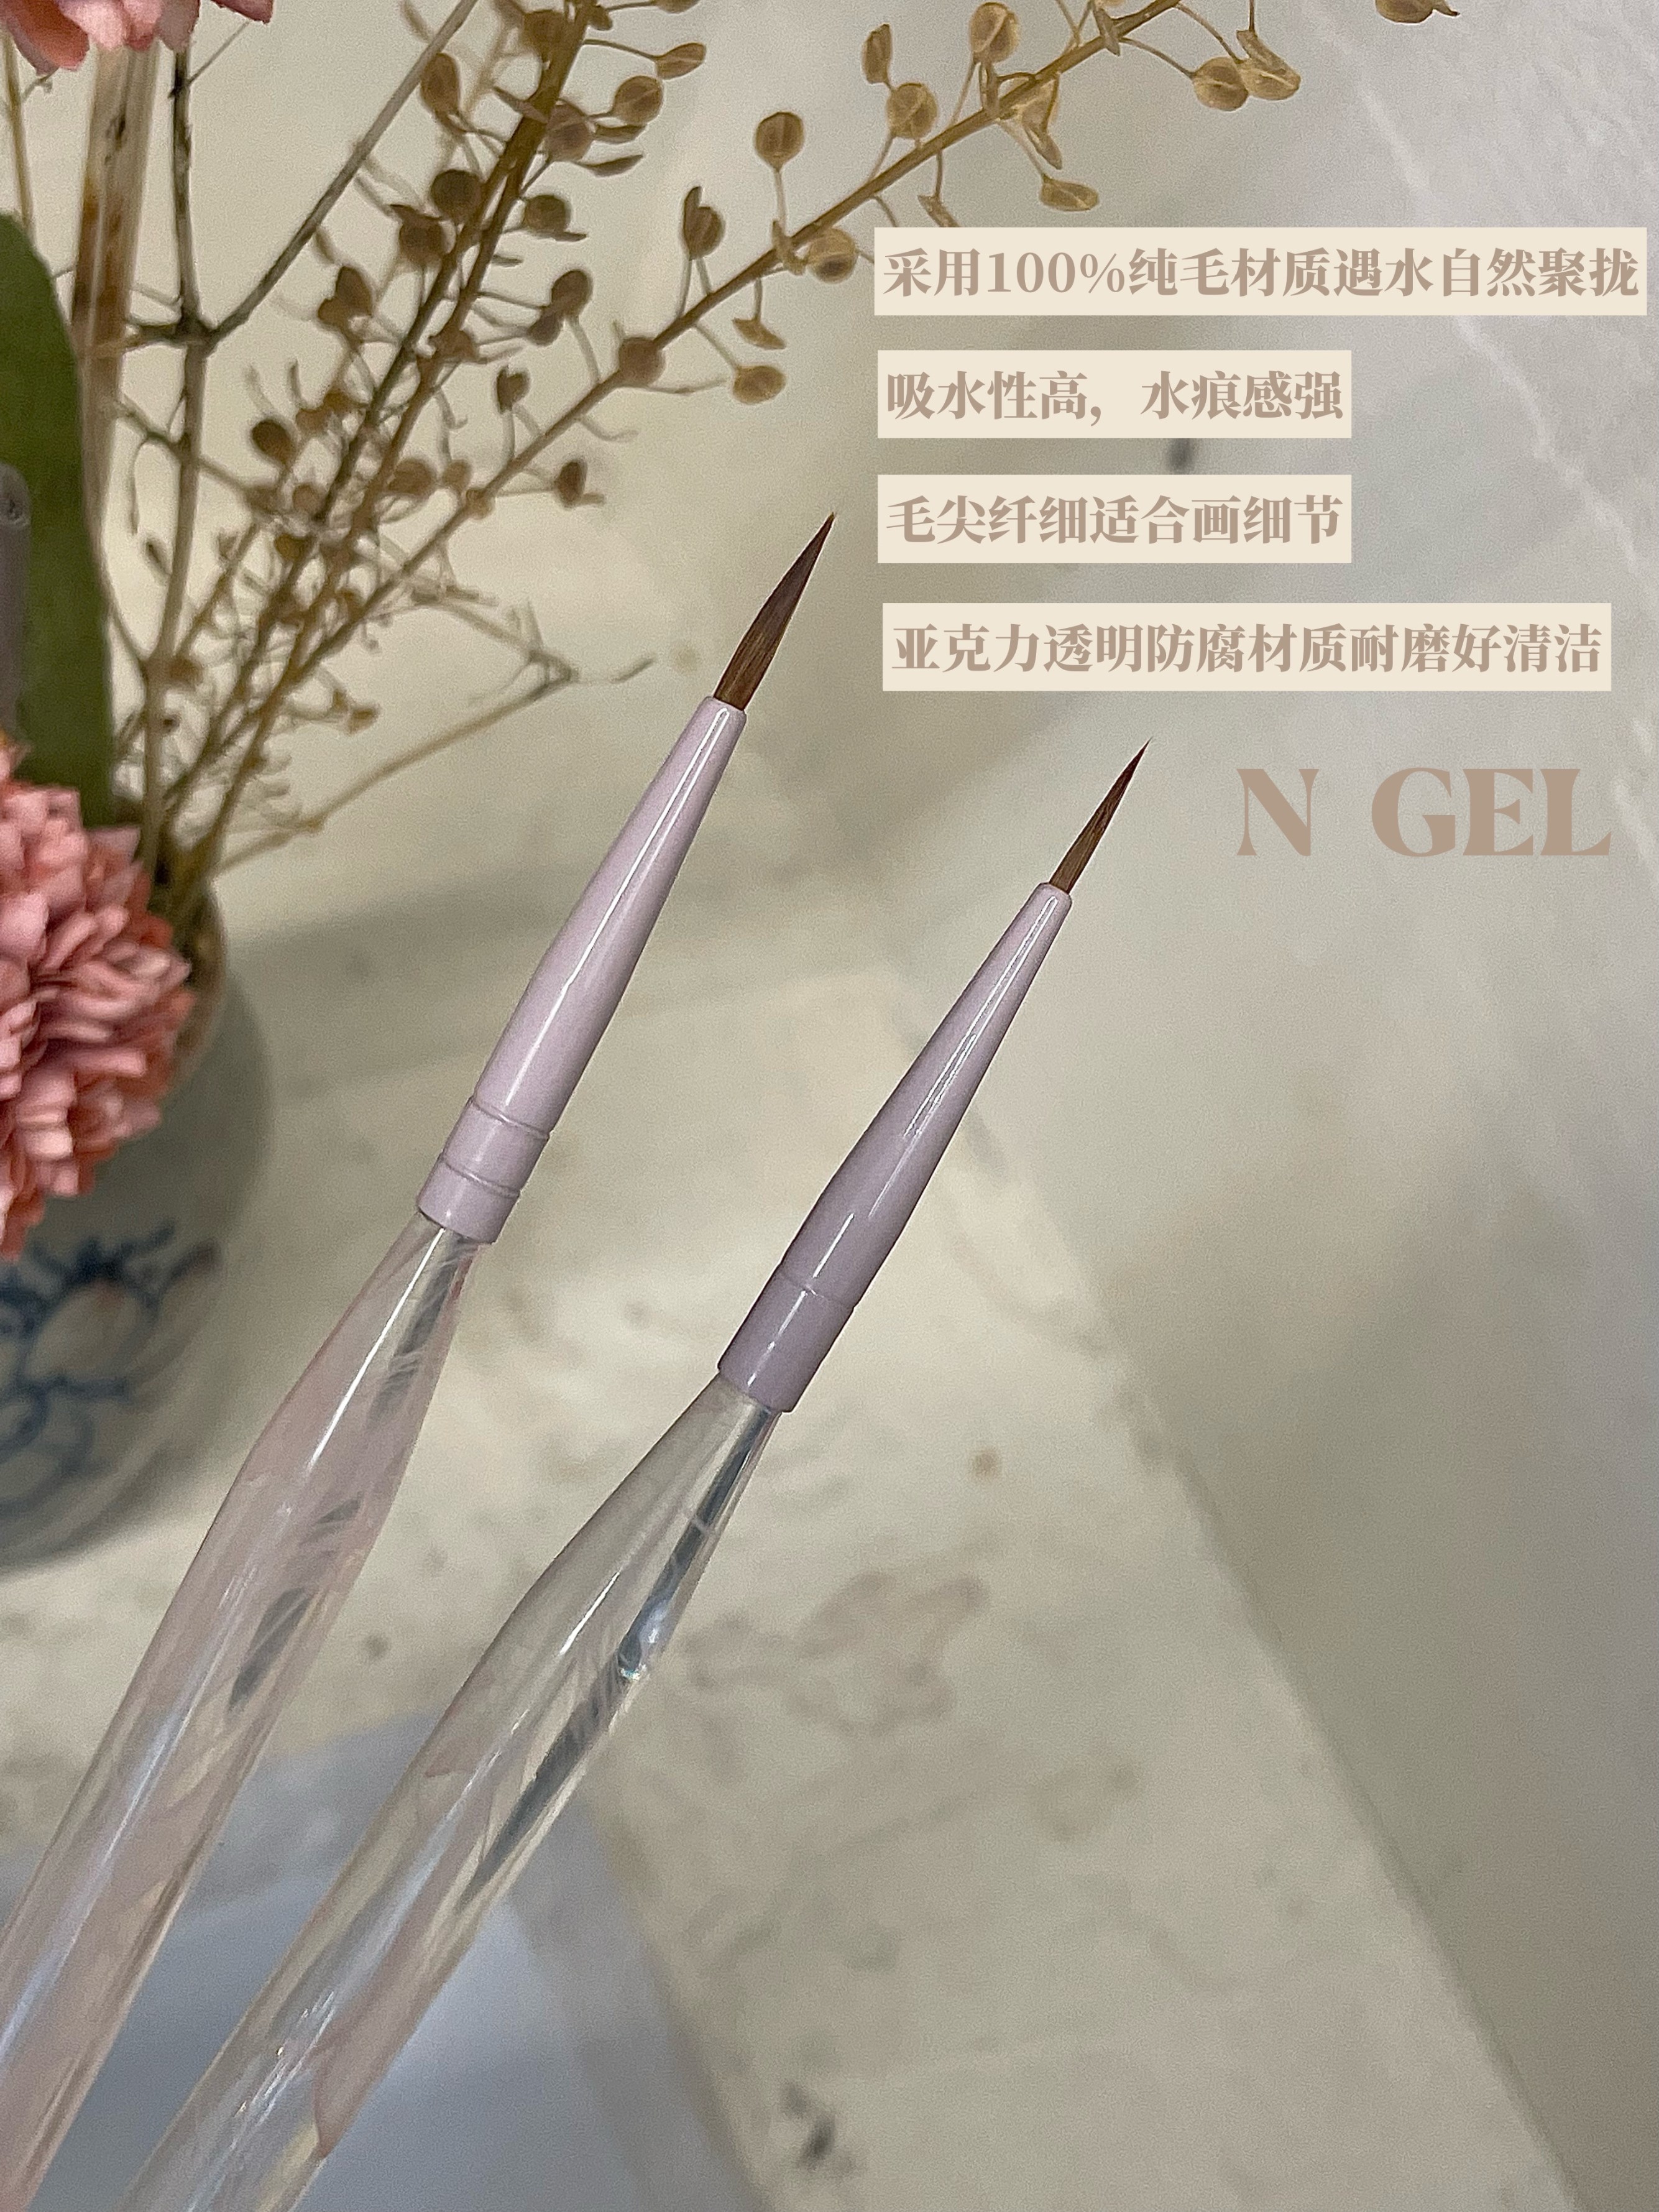 N GEL新品樱花系列美甲专用水彩笔彩绘笔纯毛